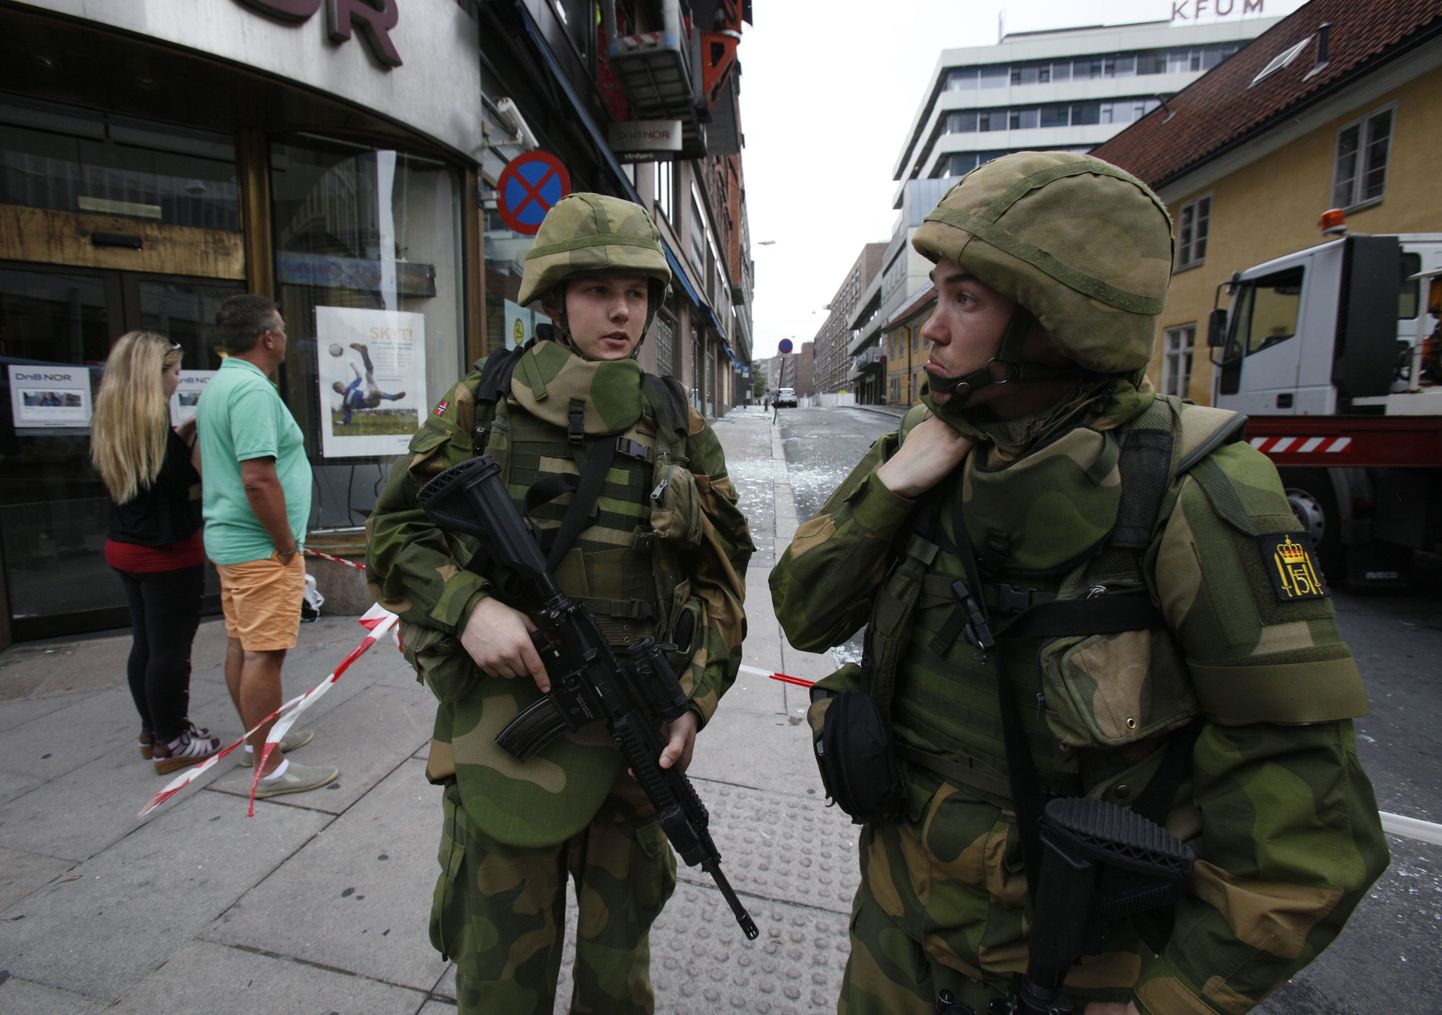 Как во время войны: норвежские стражи порядка охраняют улицу, ведущую к дому правительства.